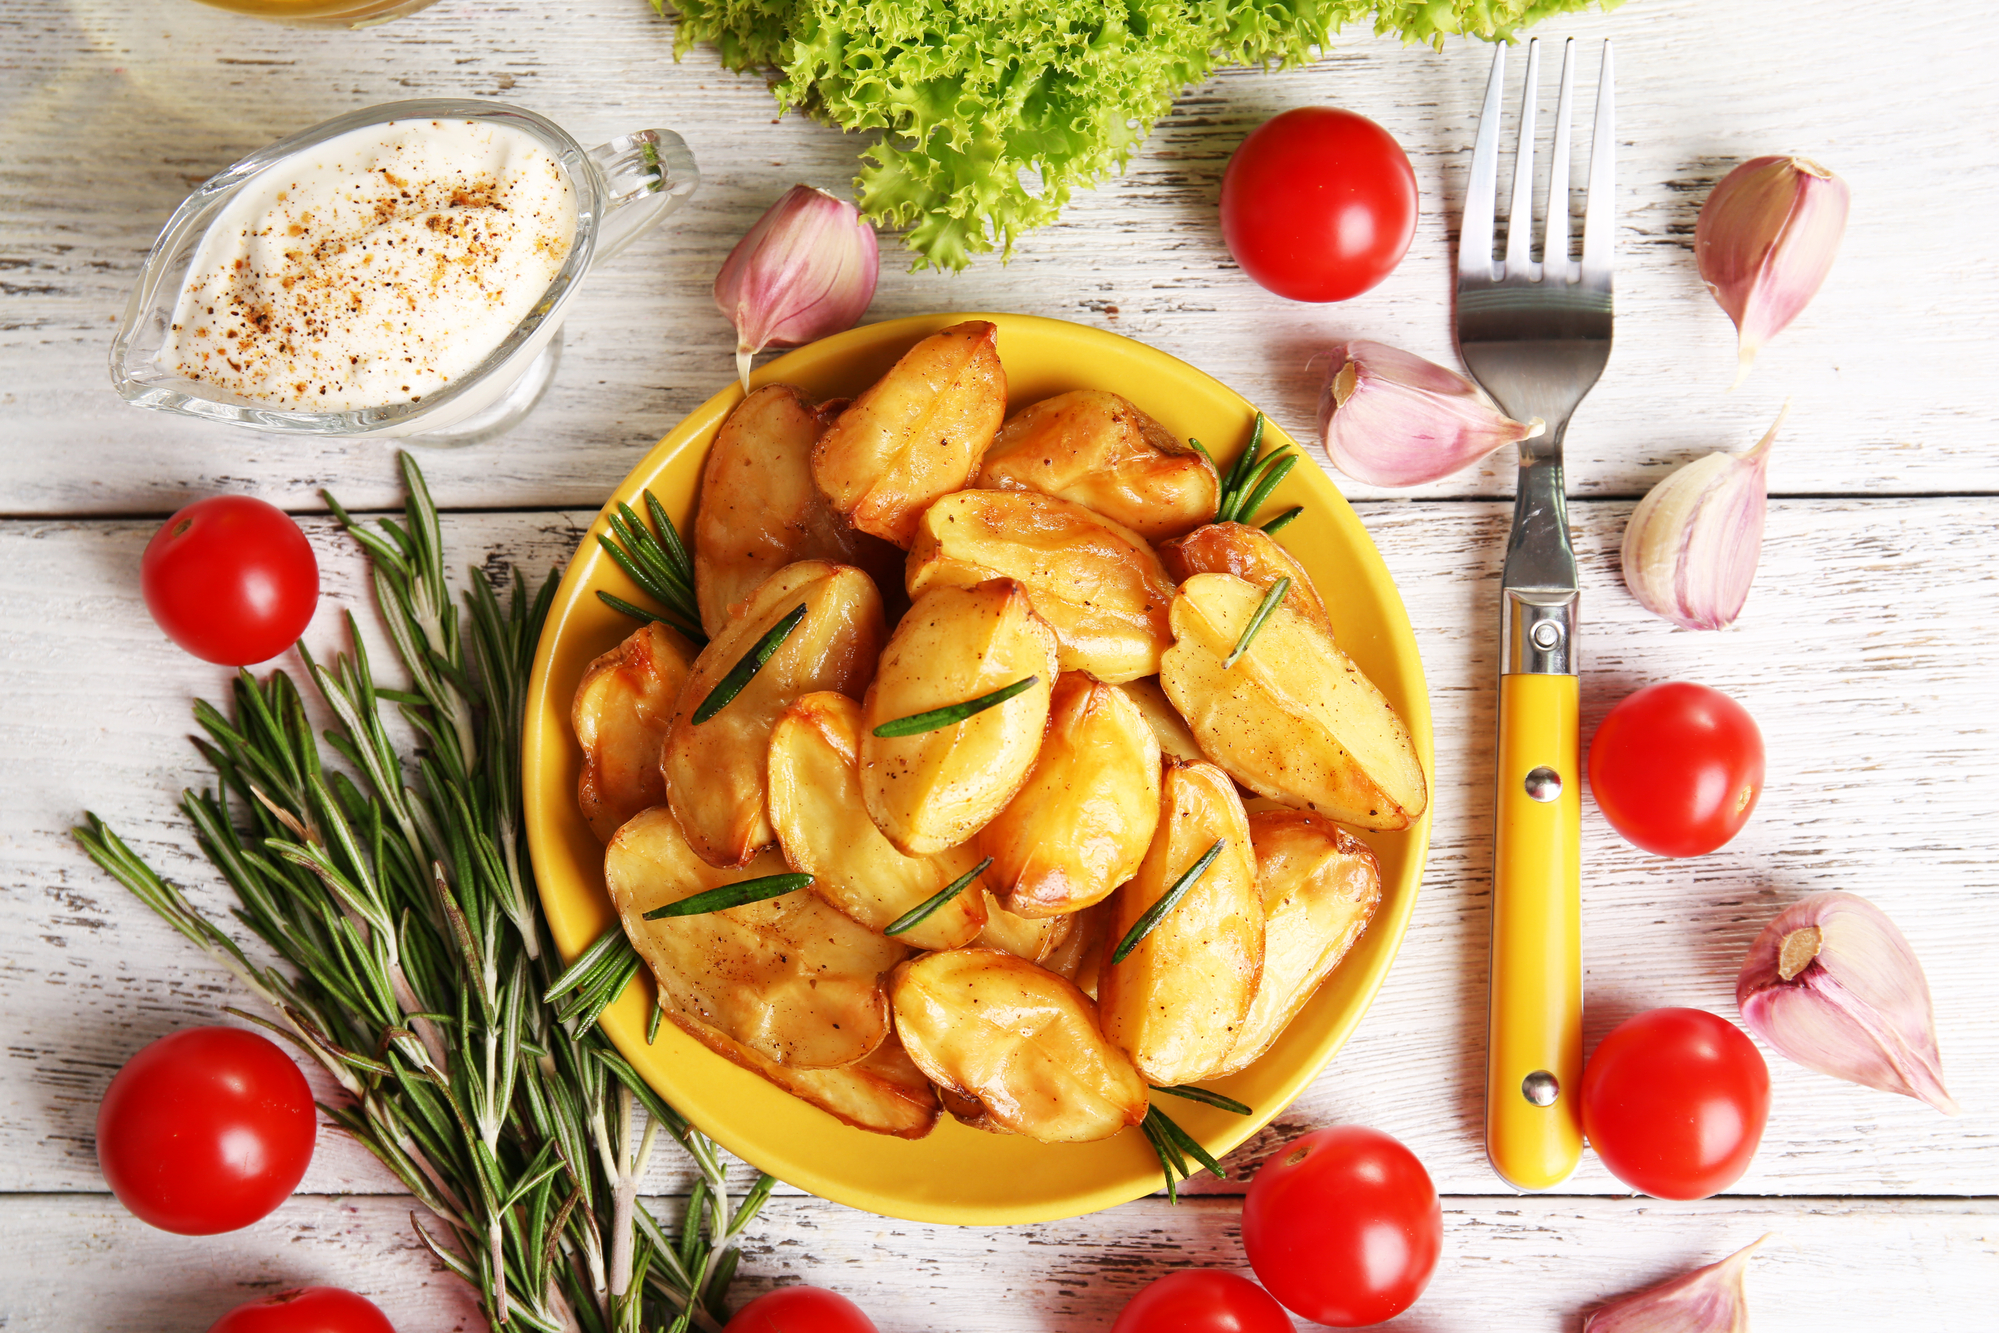 Piatto di patate a spicchi con rosmarino circondato da, da sinistra a destra: rami di rosmarino, ciotola di salsa, spicchi d'aglio, insalata, pomodorini e forchetta